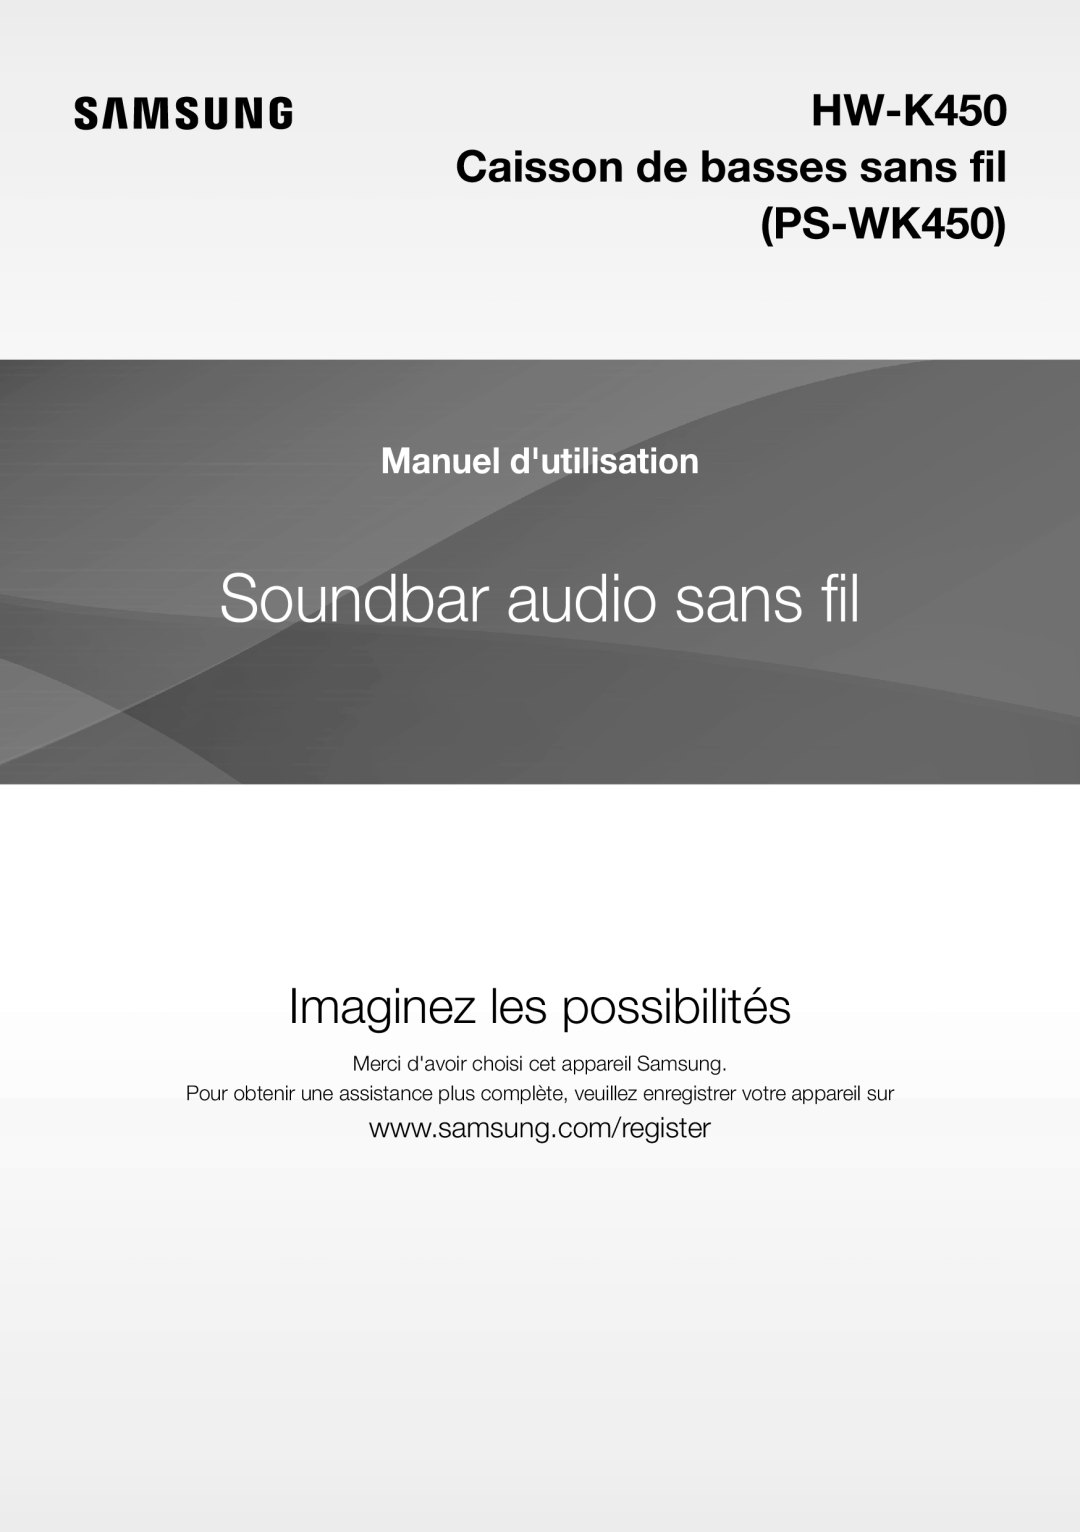 Samsung HW-K450/EN manual Soundbar audio sans fil, Imaginez les possibilités, HW-K450 Caisson de basses sans fil PS-WK450 